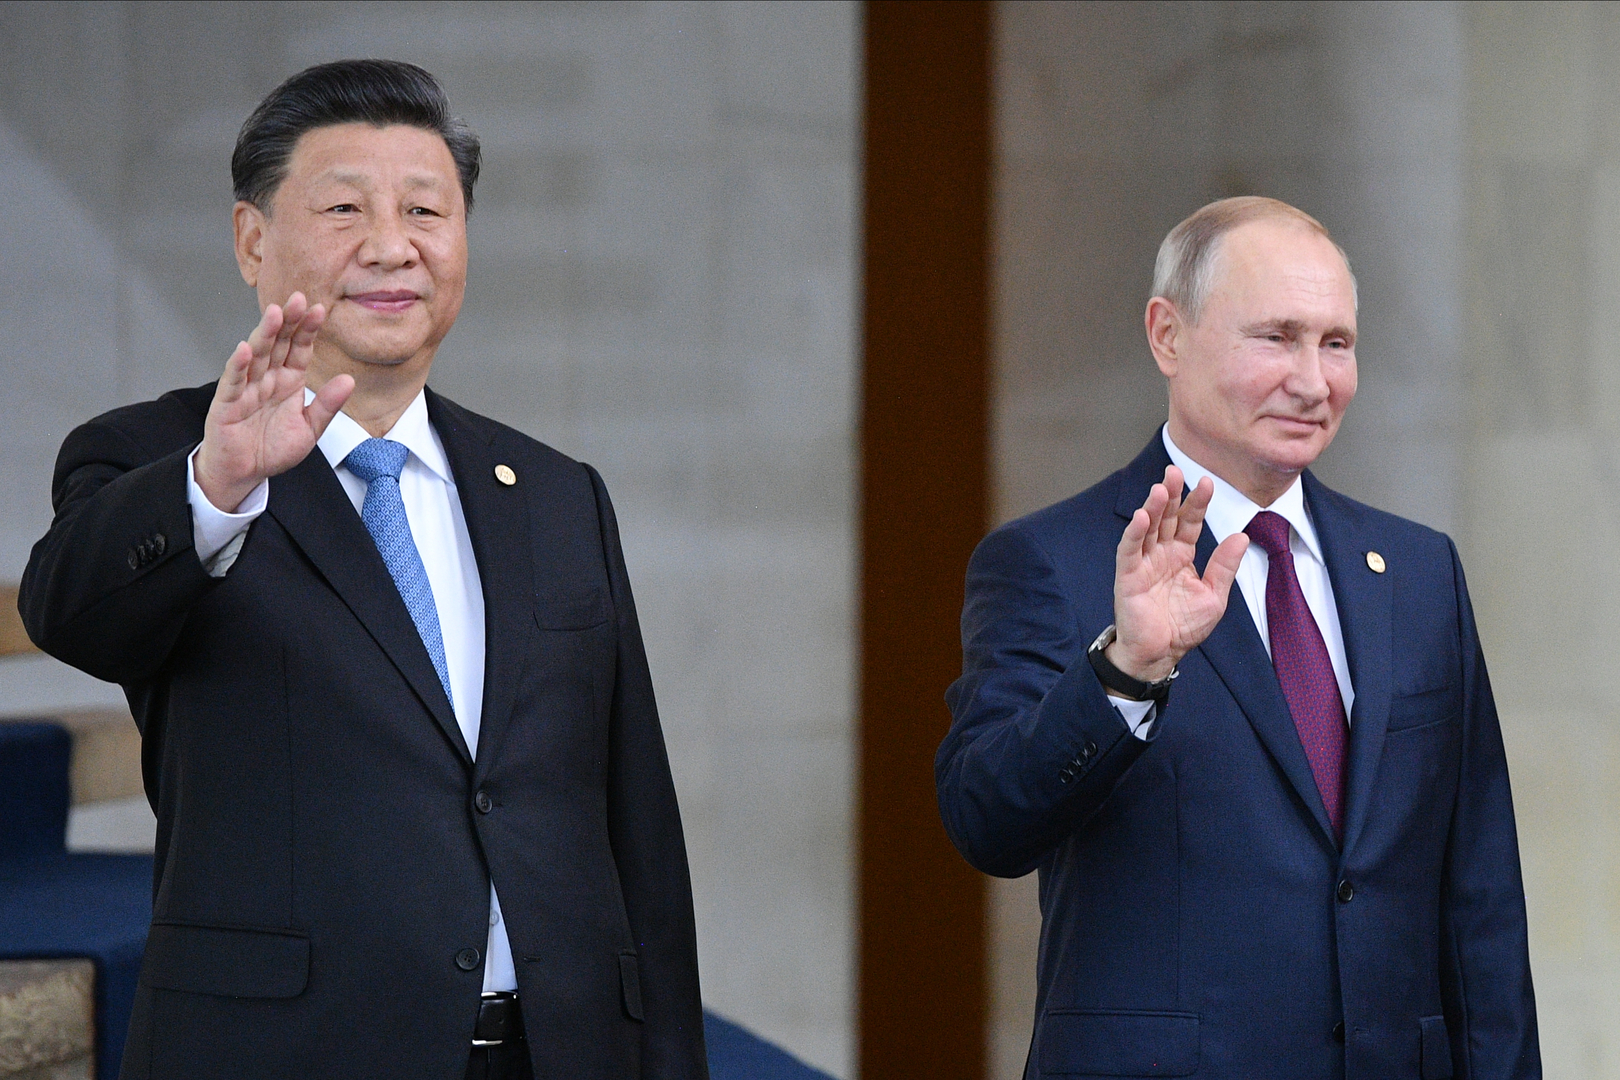 بوتين وشي جين بينغ يؤكدان أن الاتصالات بين روسيا والصين بلغت أعلى مستوى في التاريخ